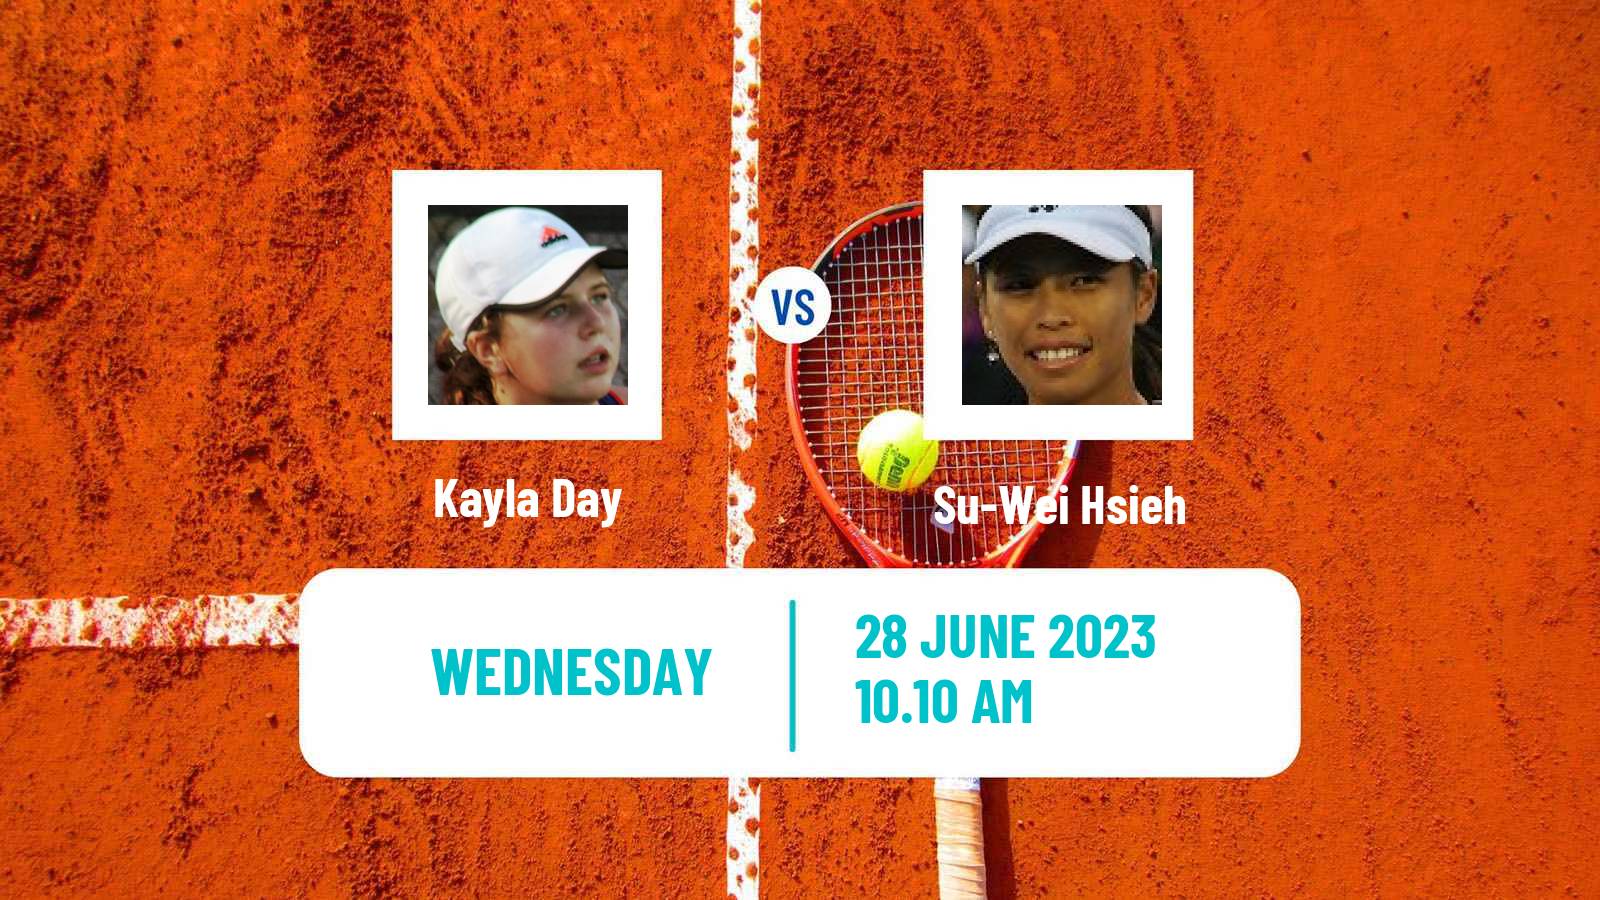 Tennis WTA Wimbledon Kayla Day - Su-Wei Hsieh